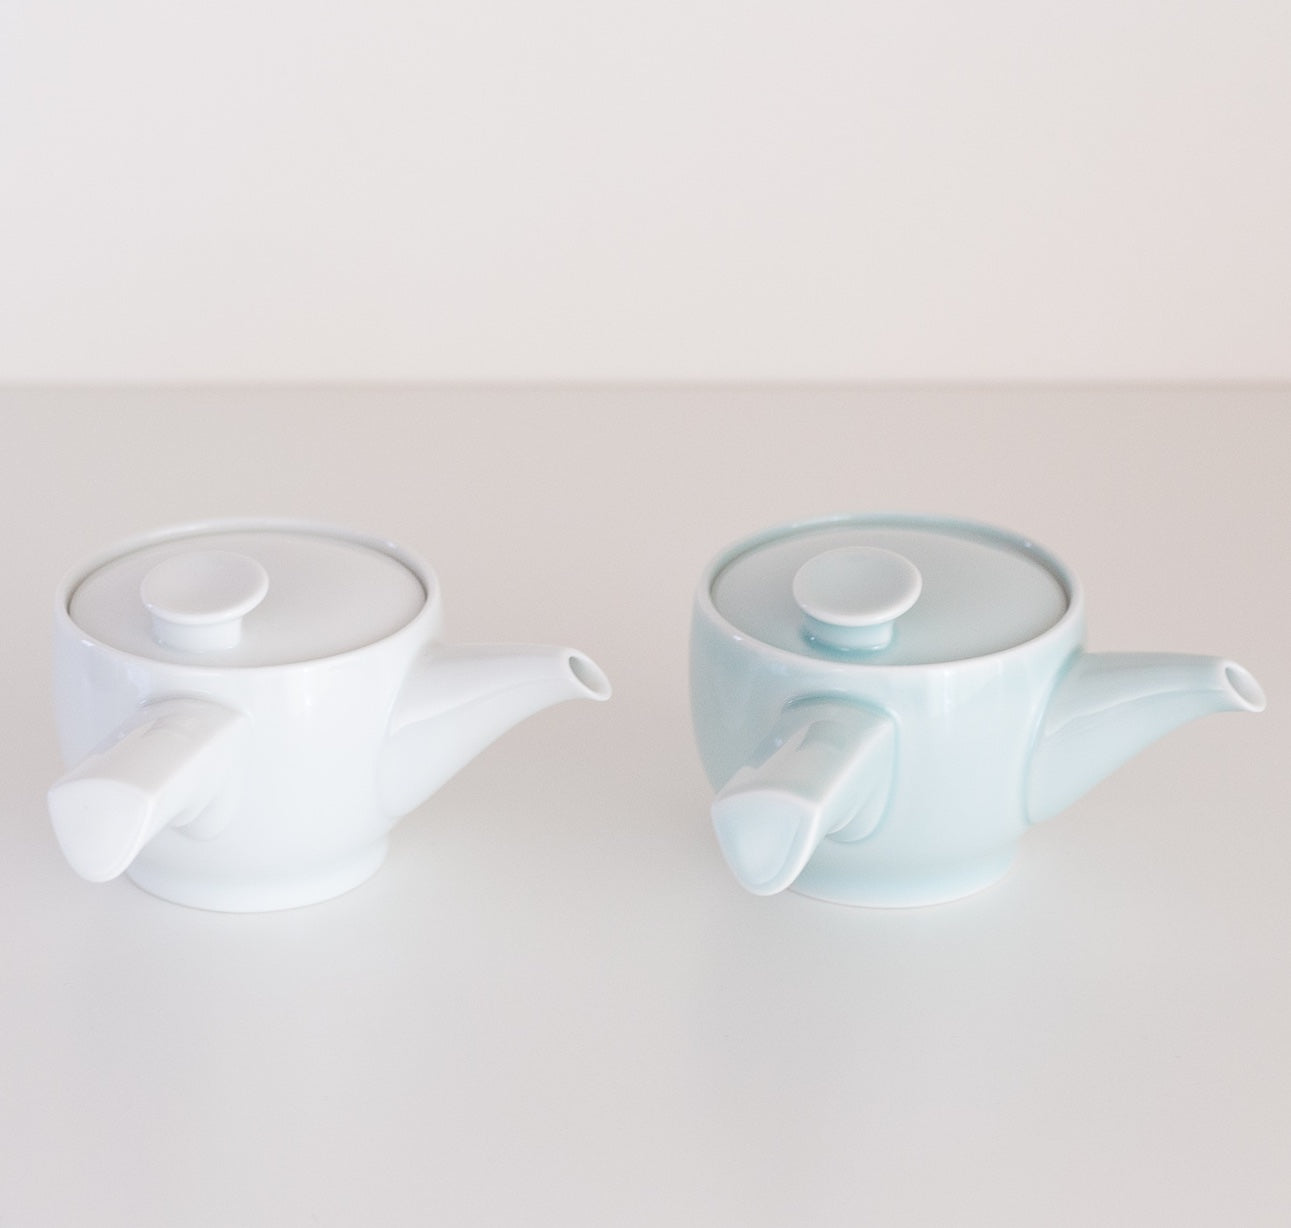 急須「茶和」は白磁と青白釉の2色展開